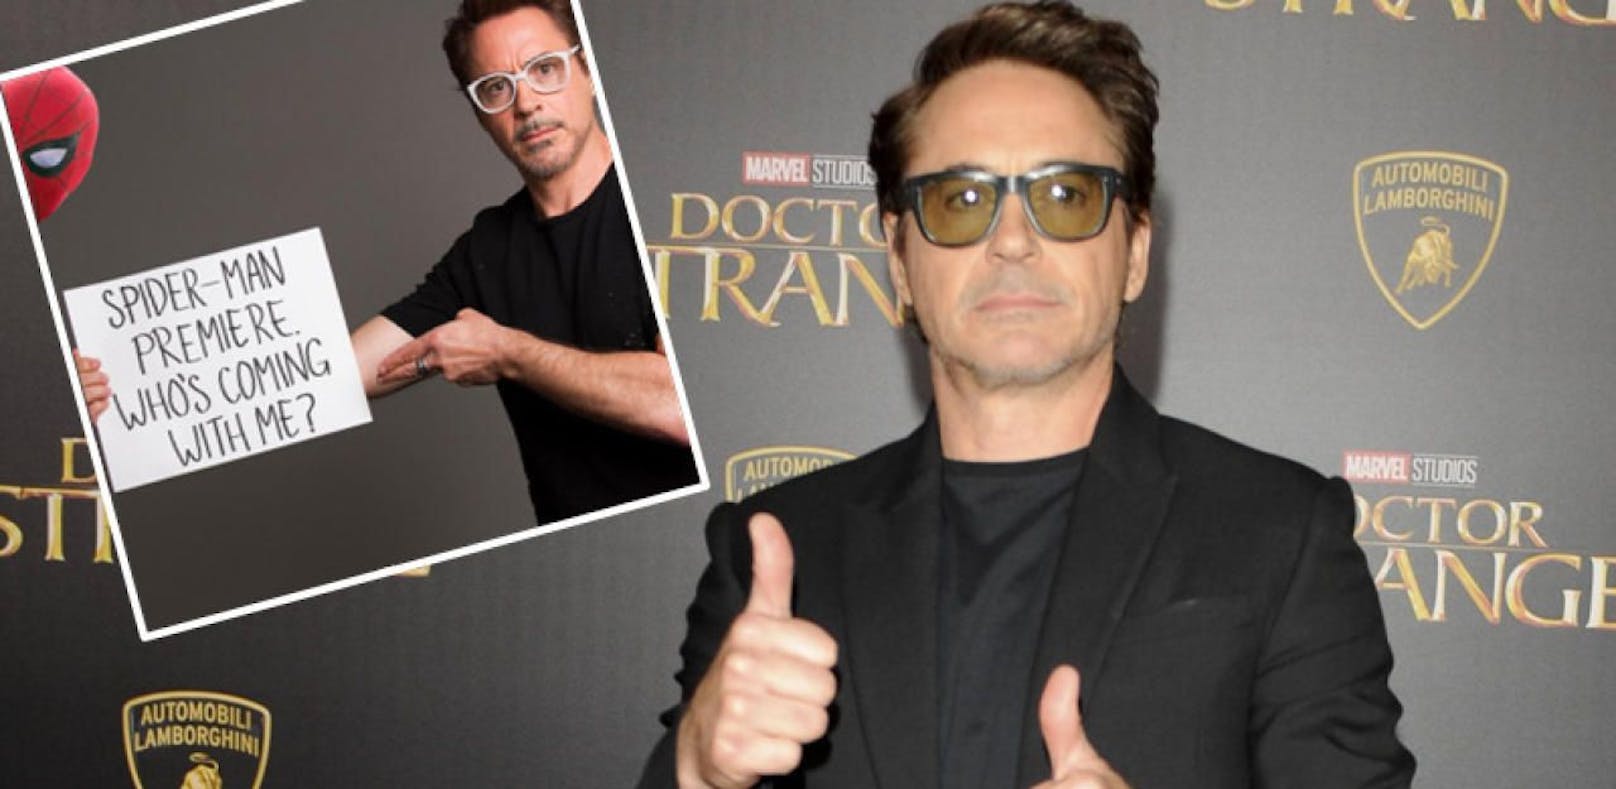 Wer will auf ein Date mit Robert Downey Jr. gehen?